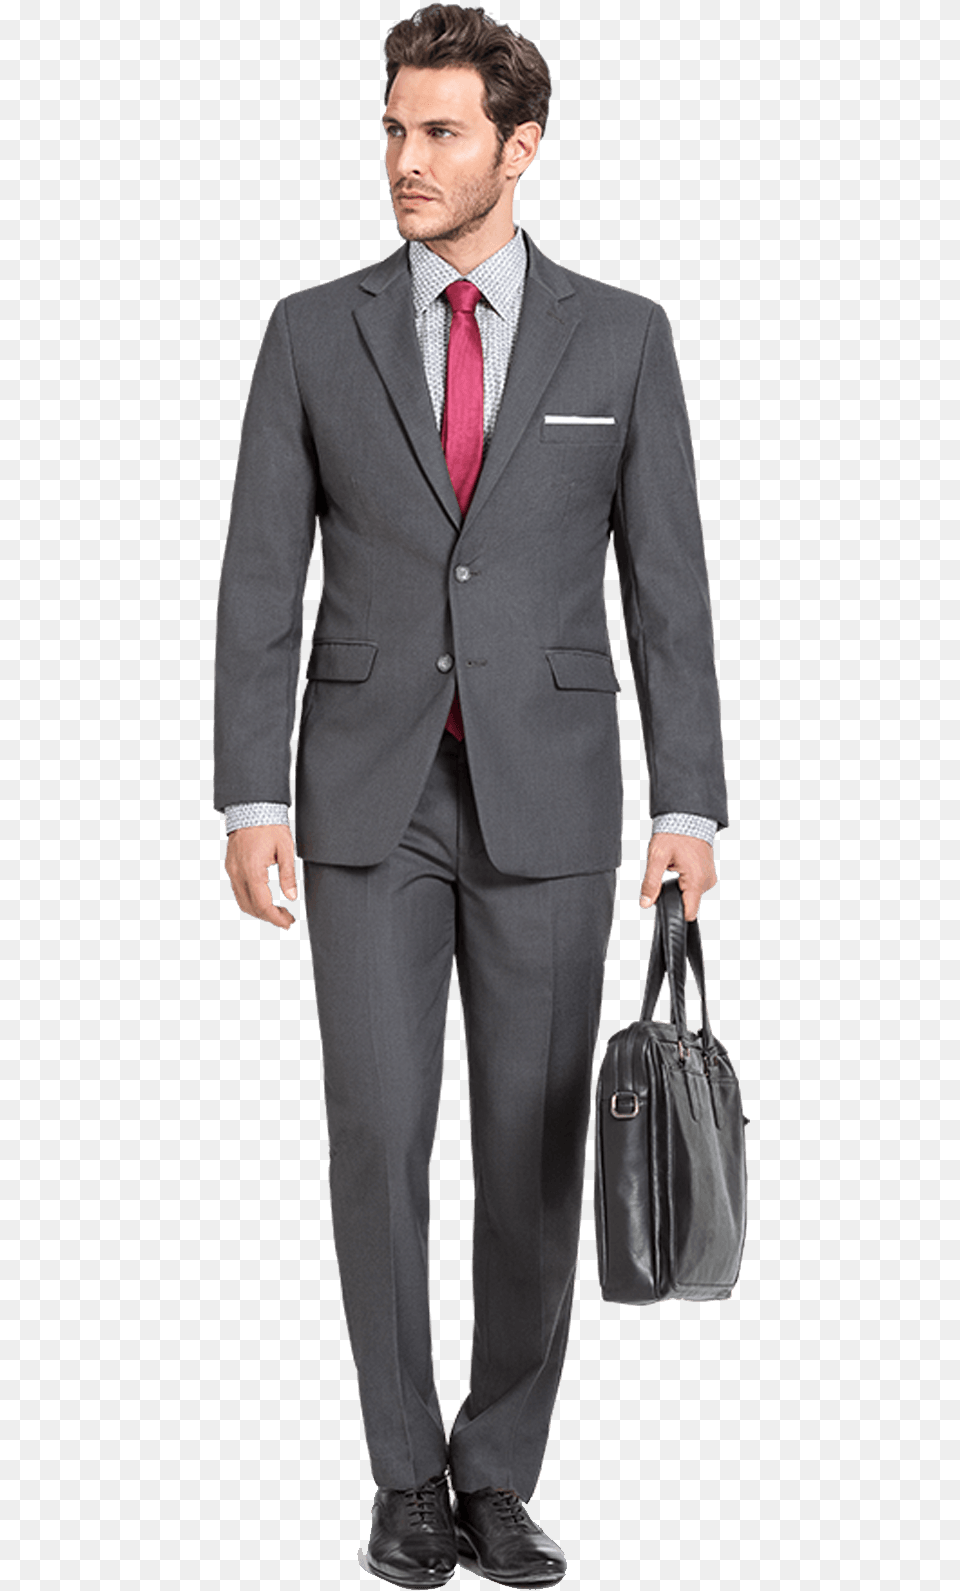 Coat Pant Transparent Grey Lucifer Suits, Accessories, Tie, Suit, Clothing Png Image